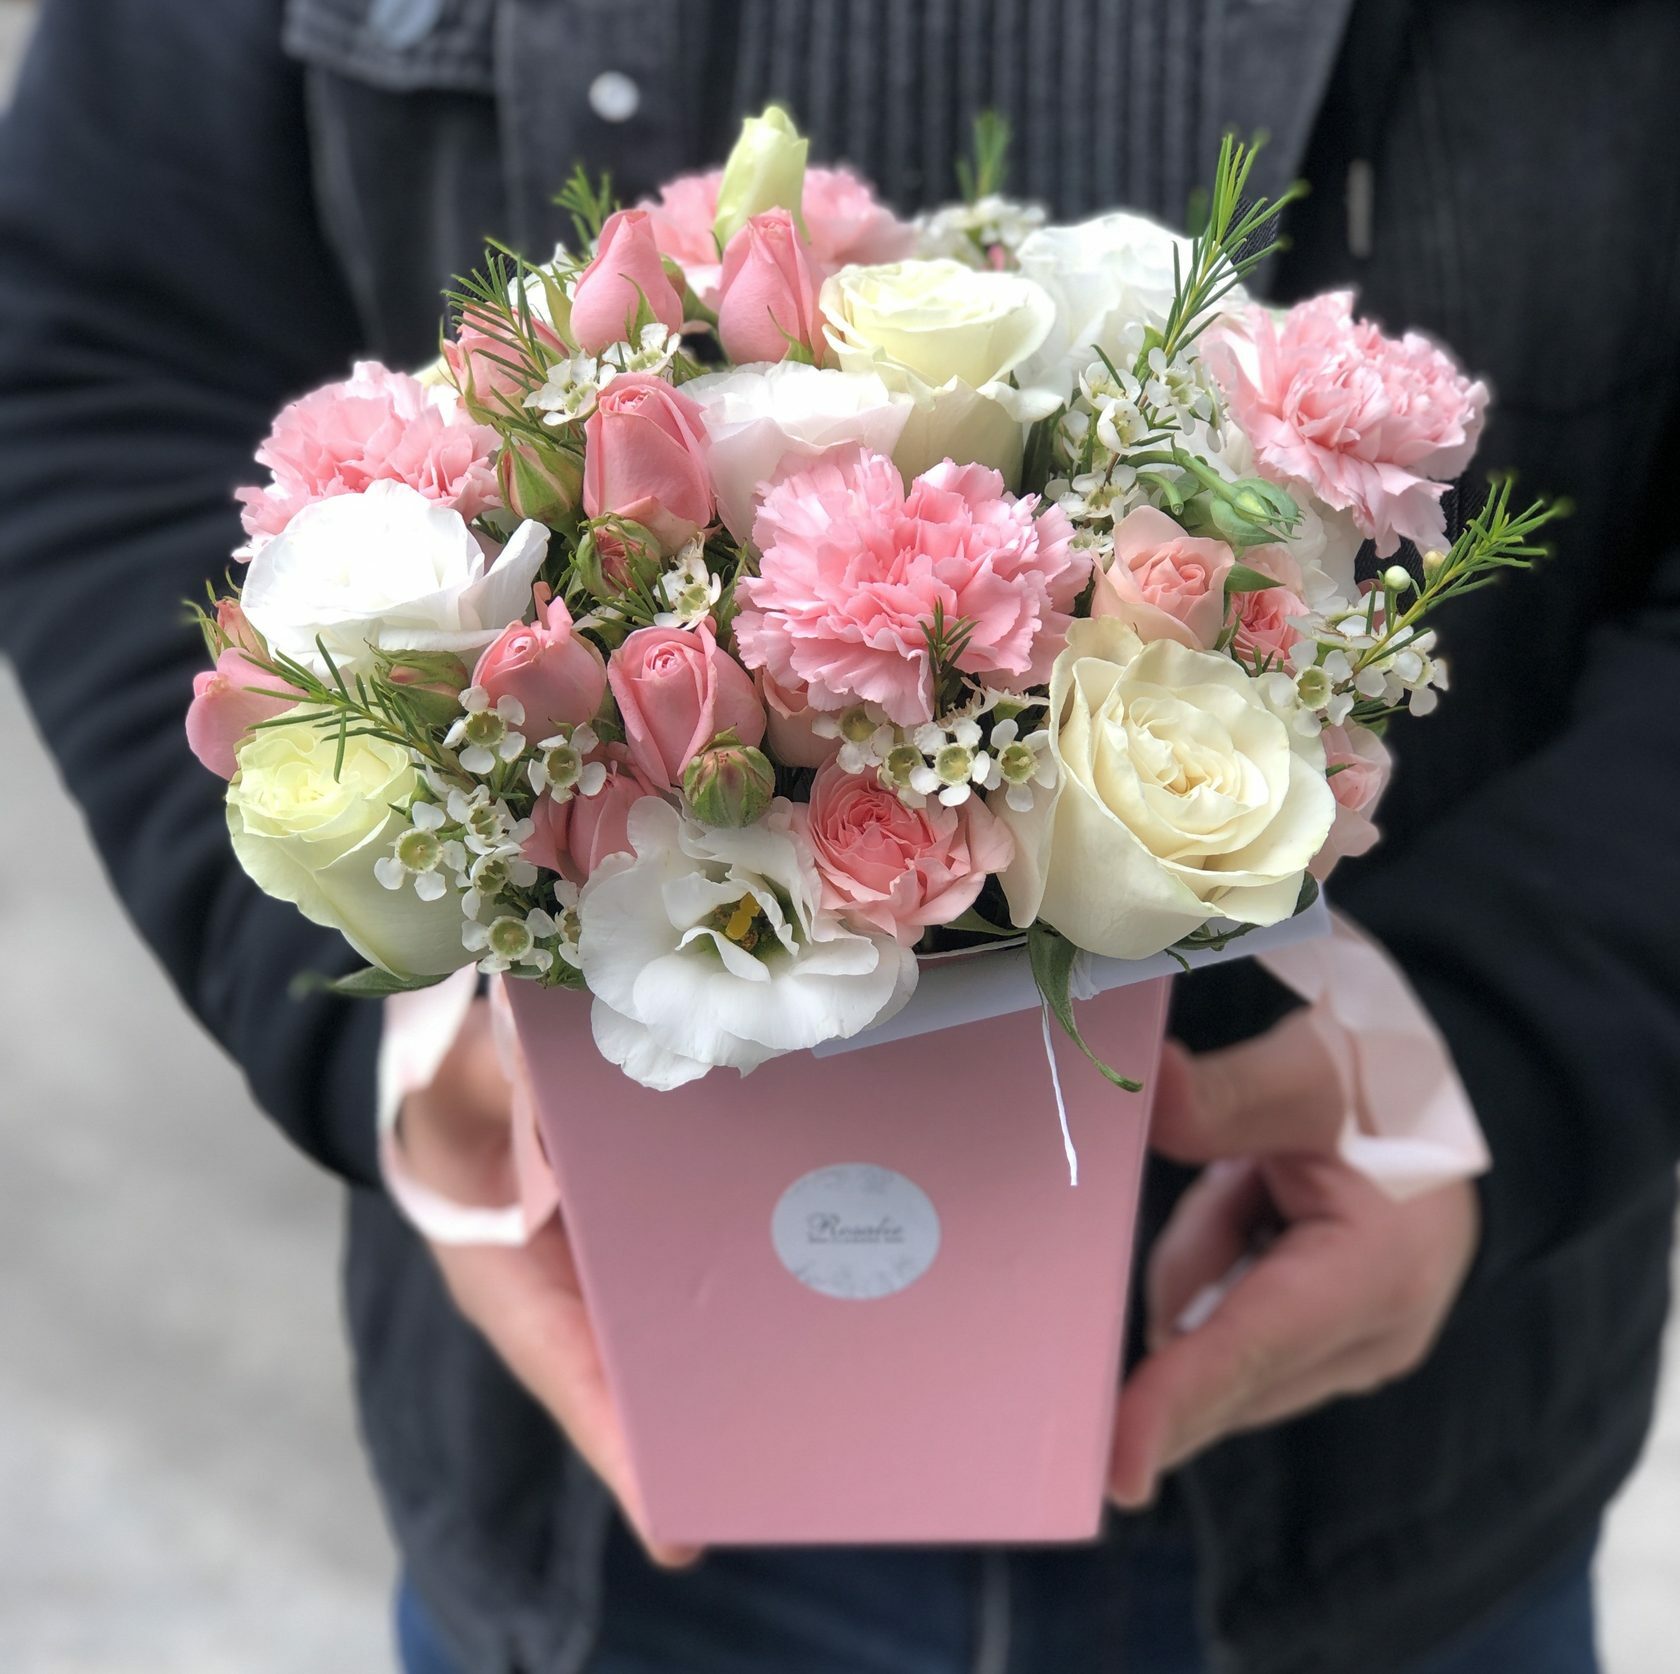 Анонимная доставка цветов в Челябинске от сервиса Русский букет